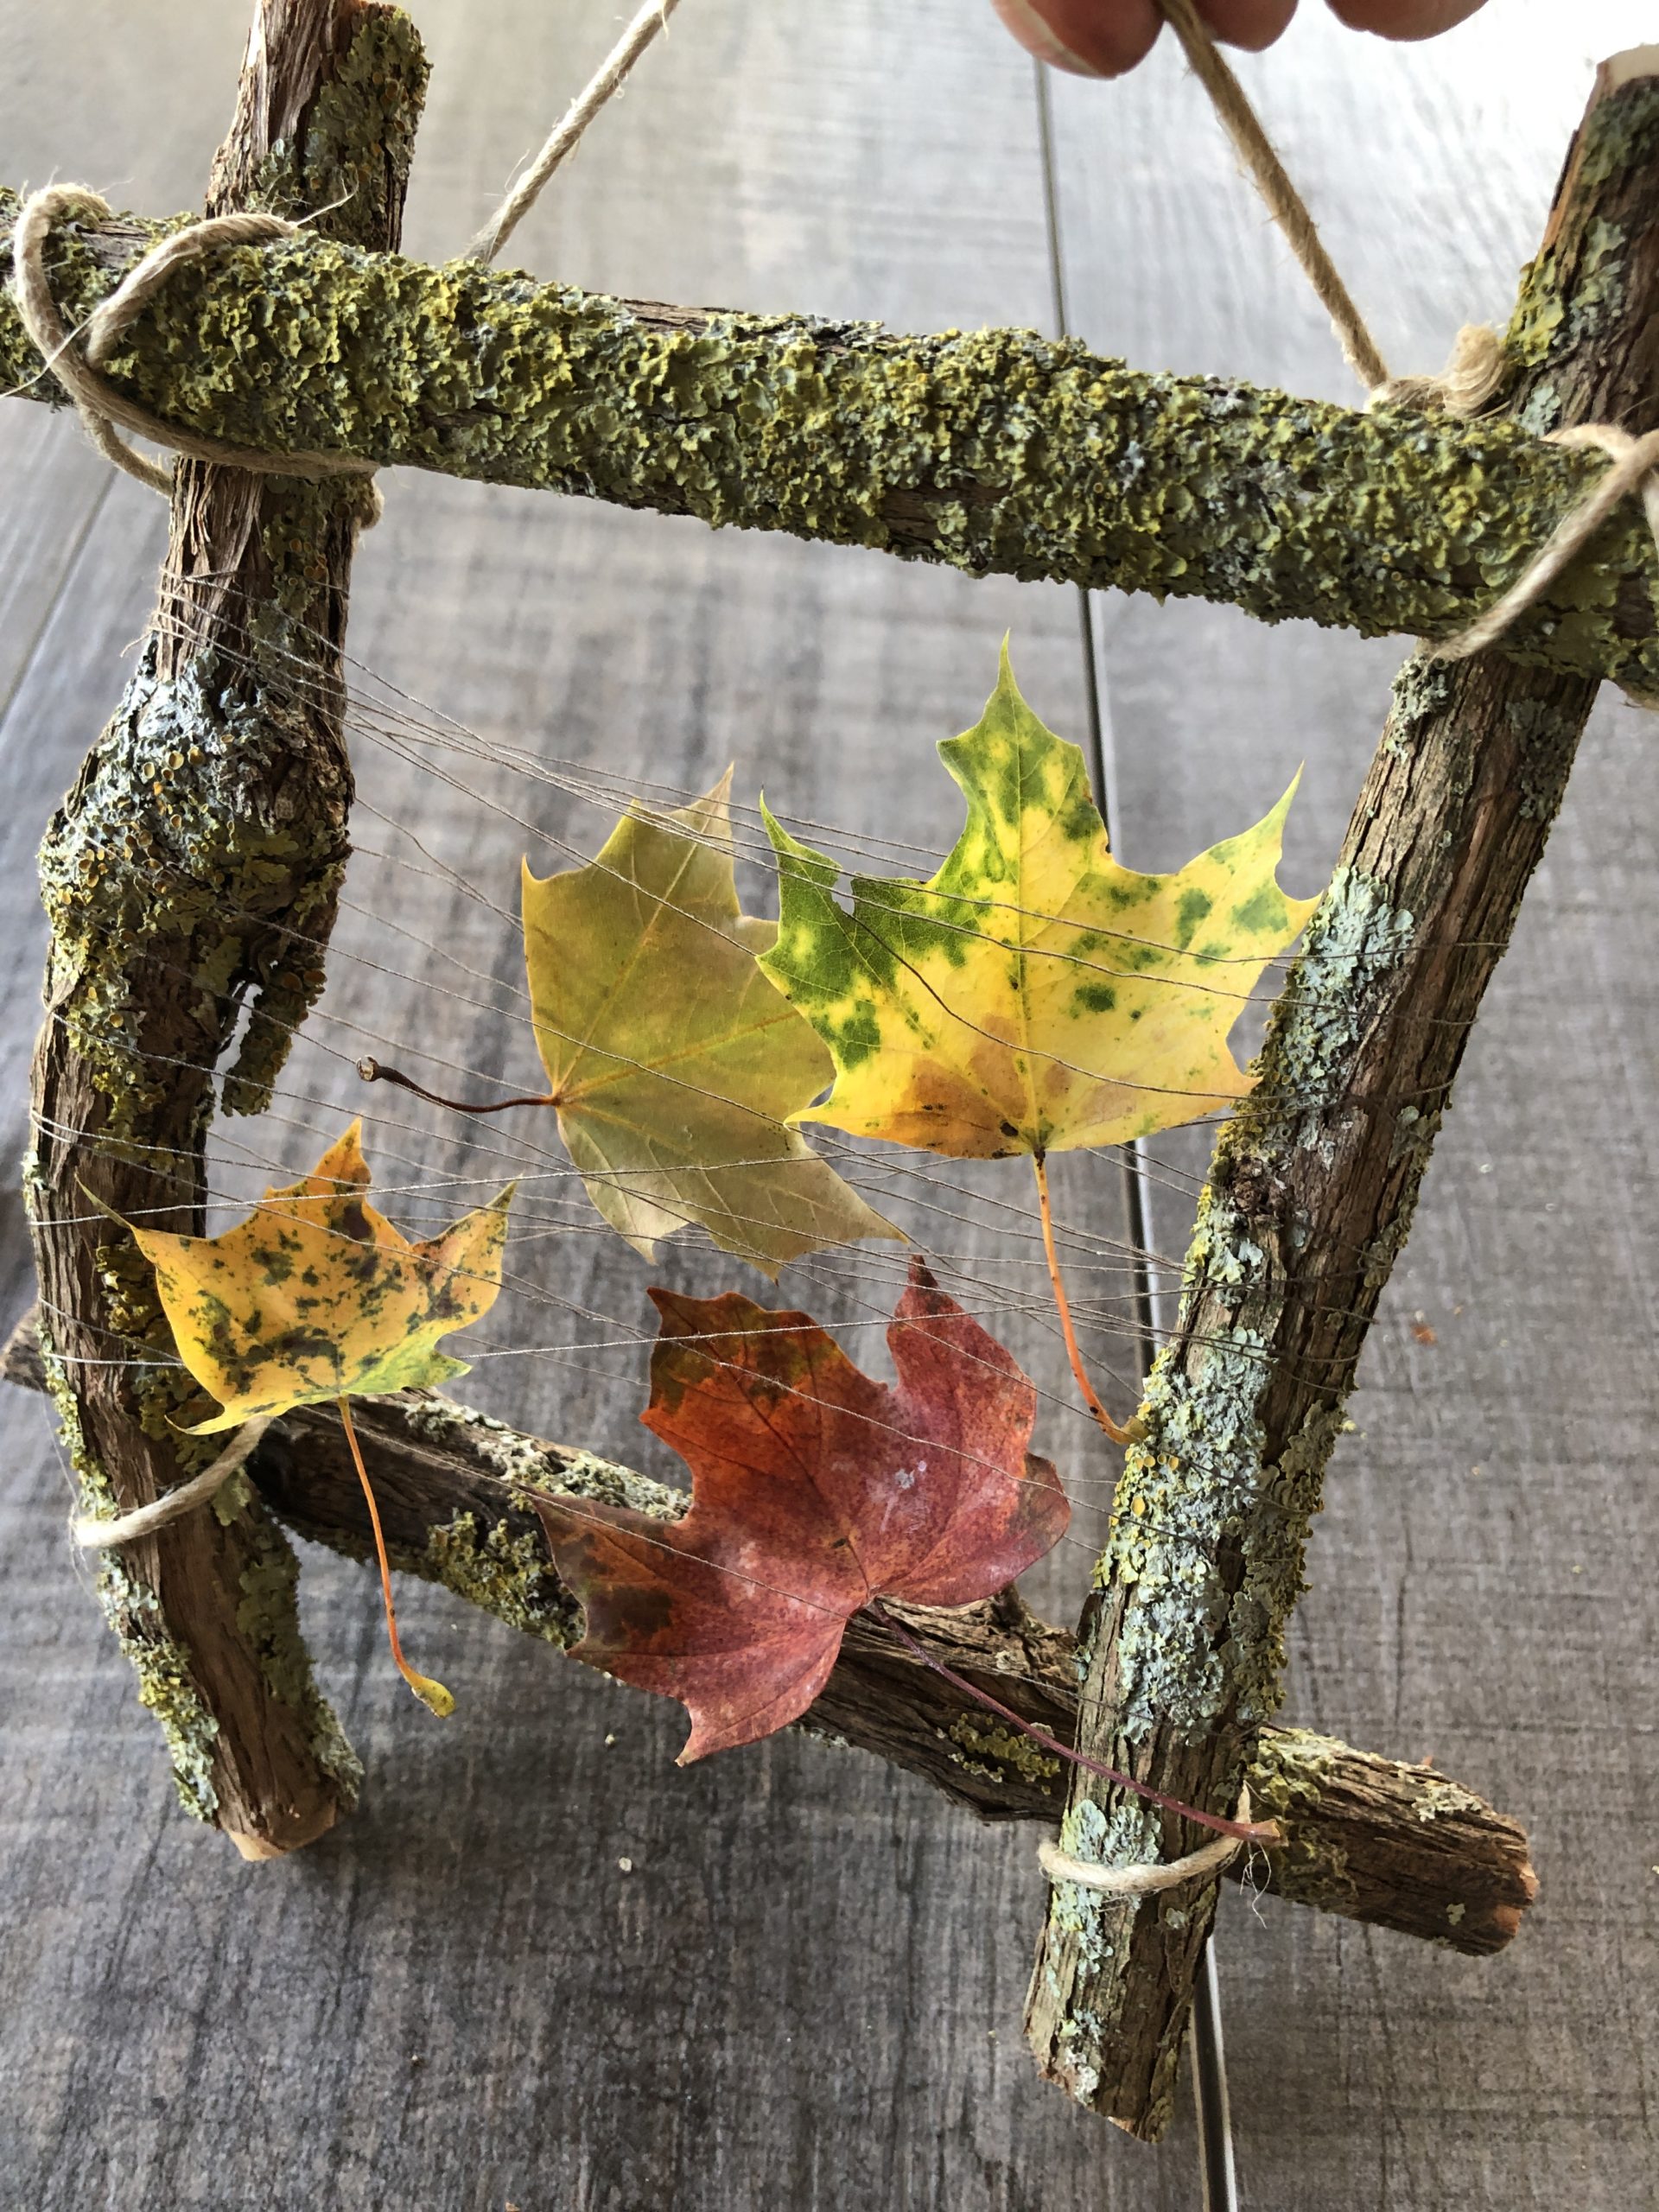 2. Bild zum Schritt 12 für das Bastel- und DIY-Abenteuer für Kinder: 'Sammelt bunte Herbstblätter und flechtet sie in das Fadennetz ein.'